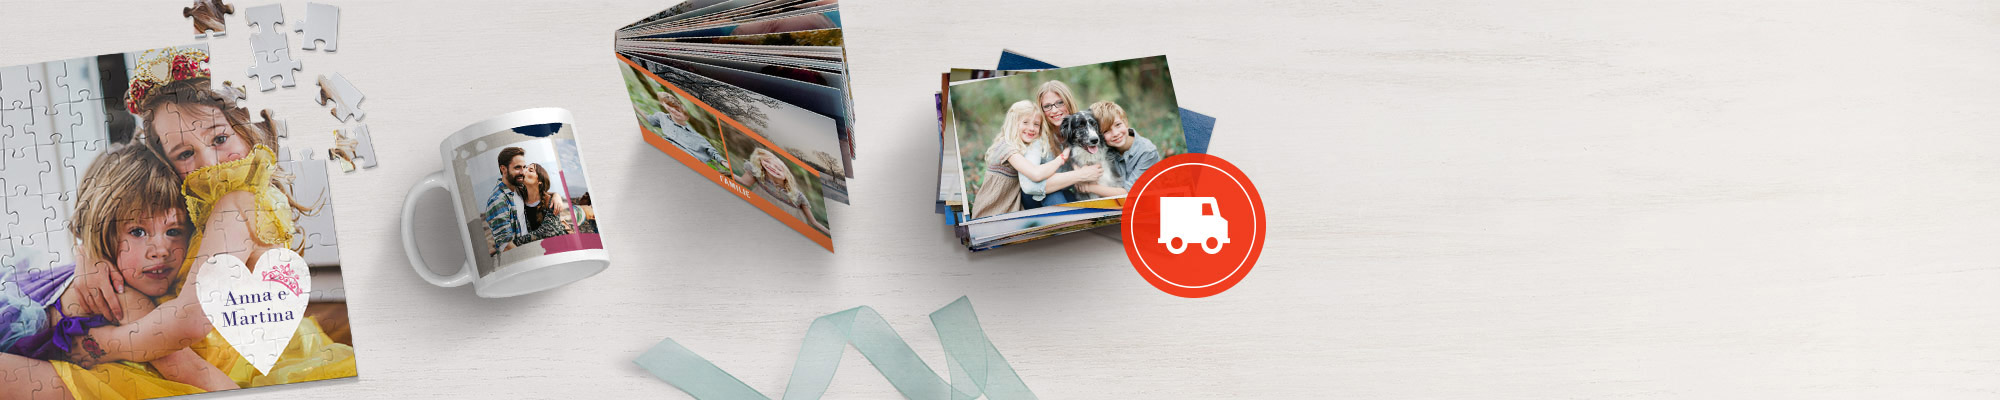 puzzle fotografico, tazza personalizzata, fotolibro standard e stampe fotografiche di alta qualità solo su Snapfish